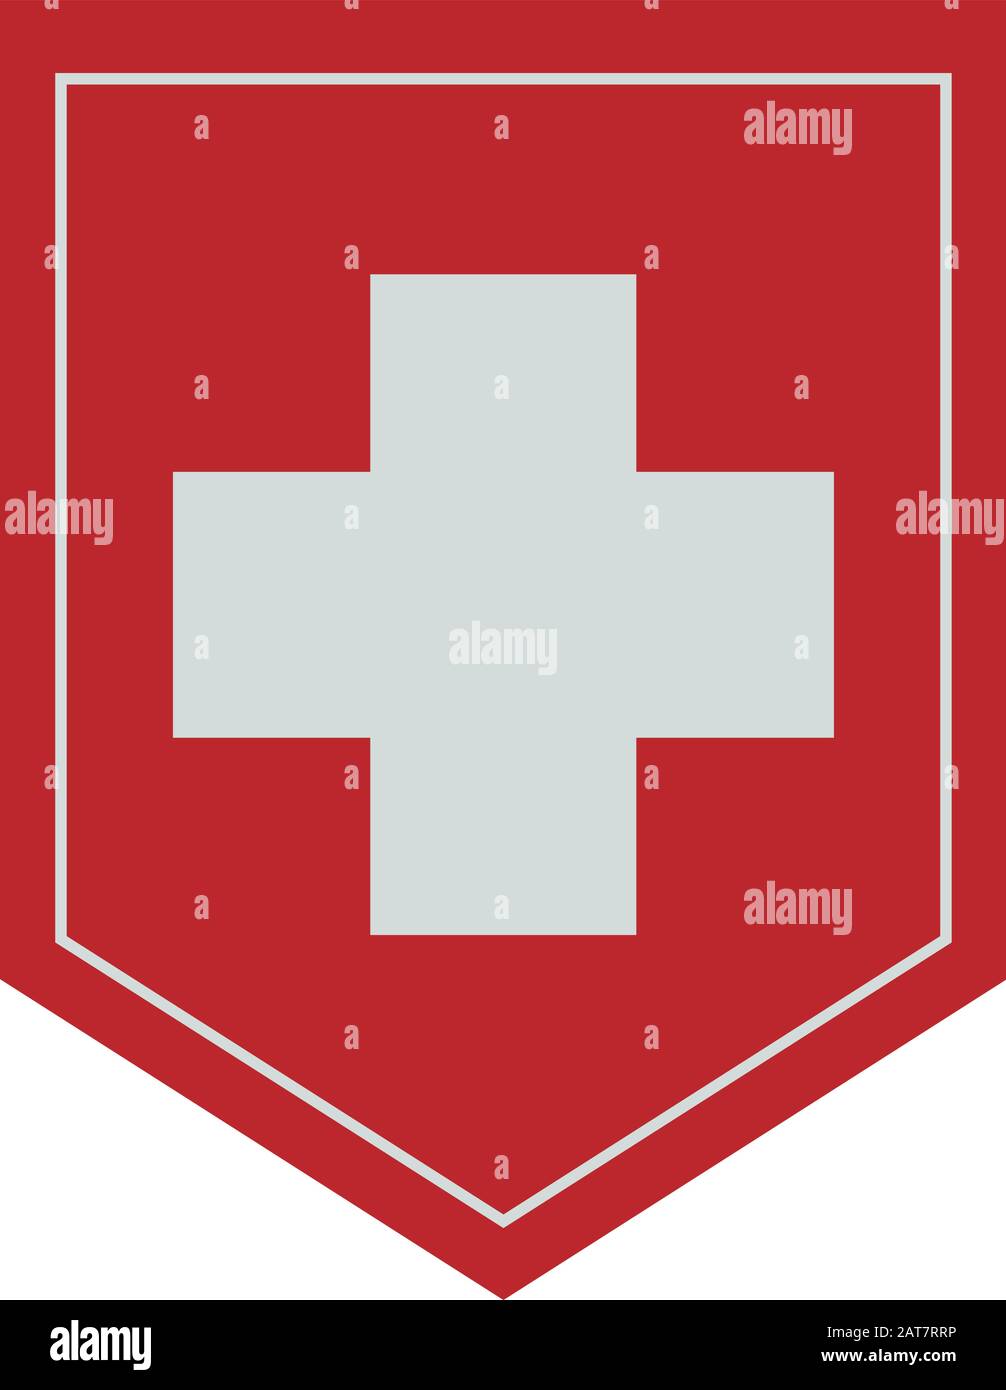 Flagge der Schweiz. Vektor. Präzise Abmessungen, Elementproportionen und  Farben Stock-Vektorgrafik - Alamy